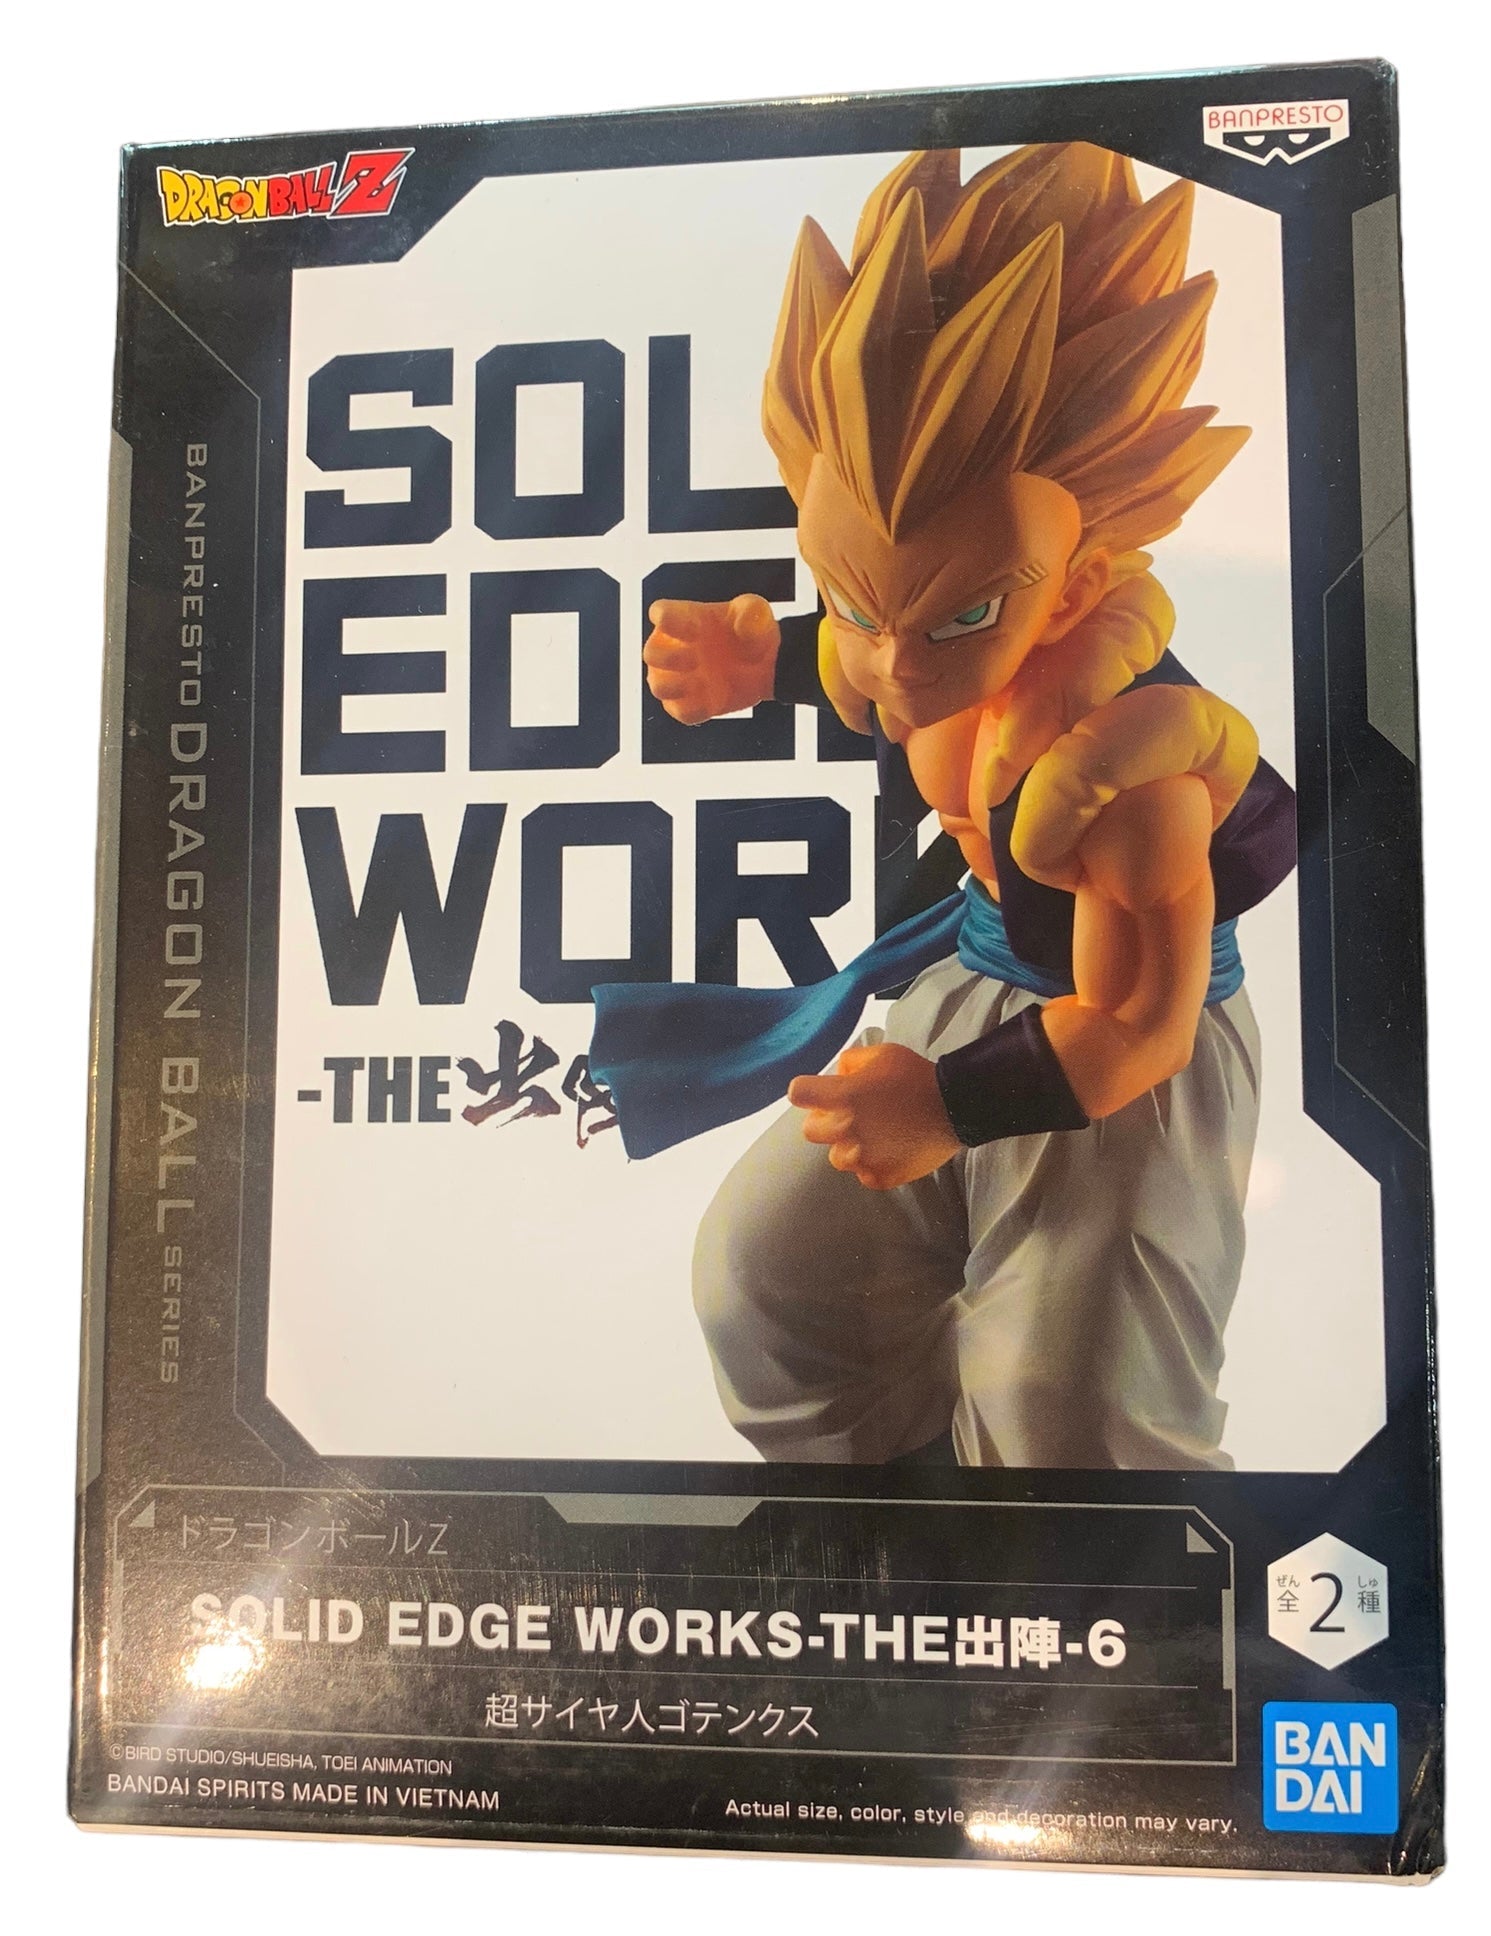  BanPresto - Dragon Ball Super - Solid Edge Works - vol